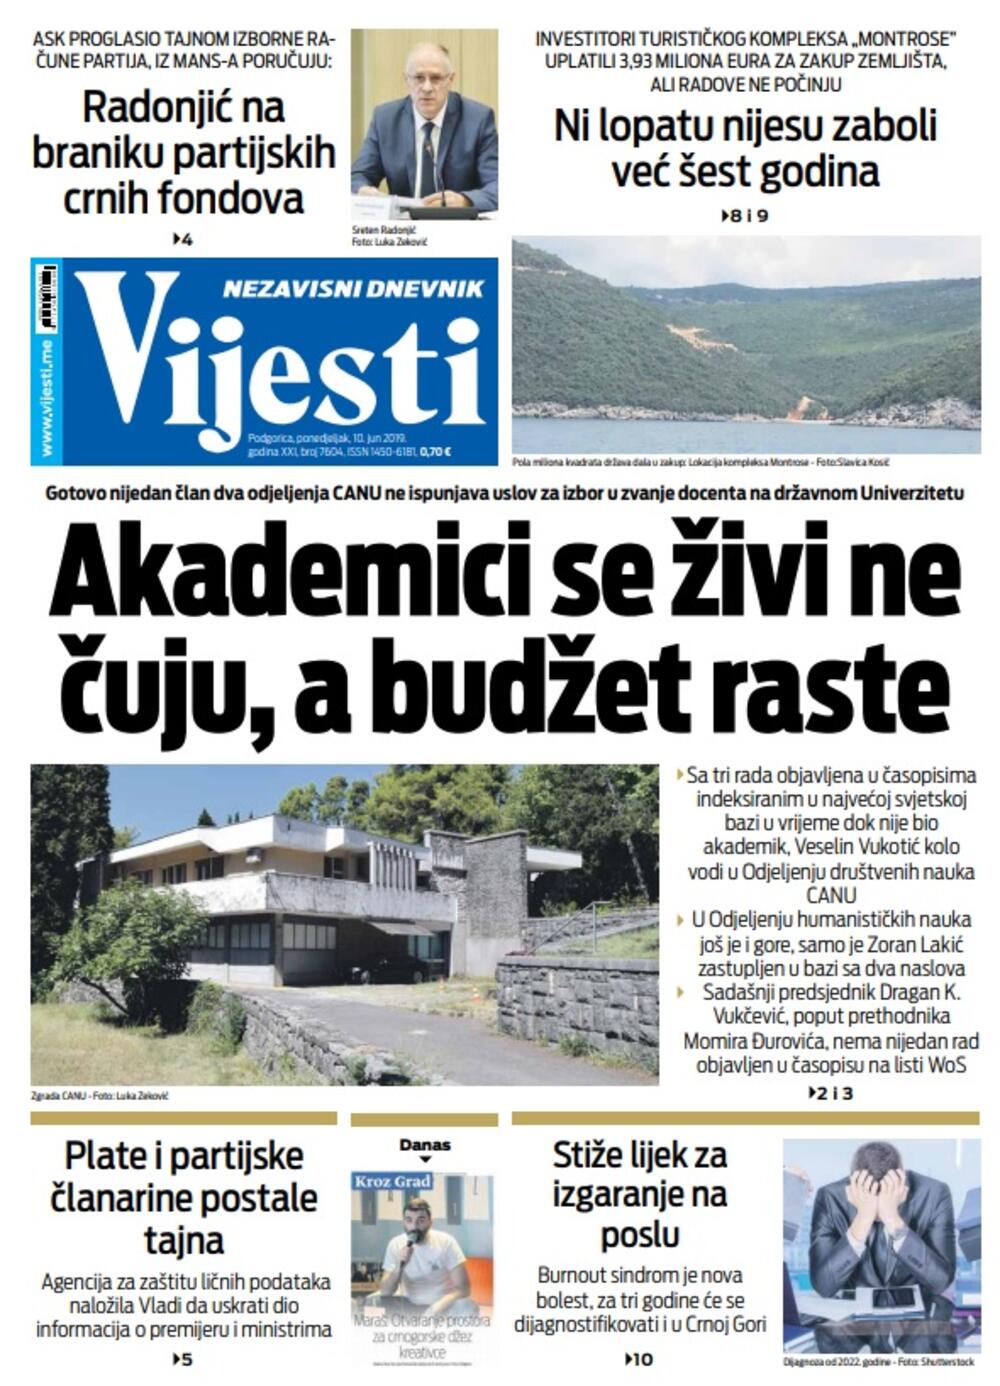 Naslovna strana "Vijesti" za 10.6., Foto: Vijesti